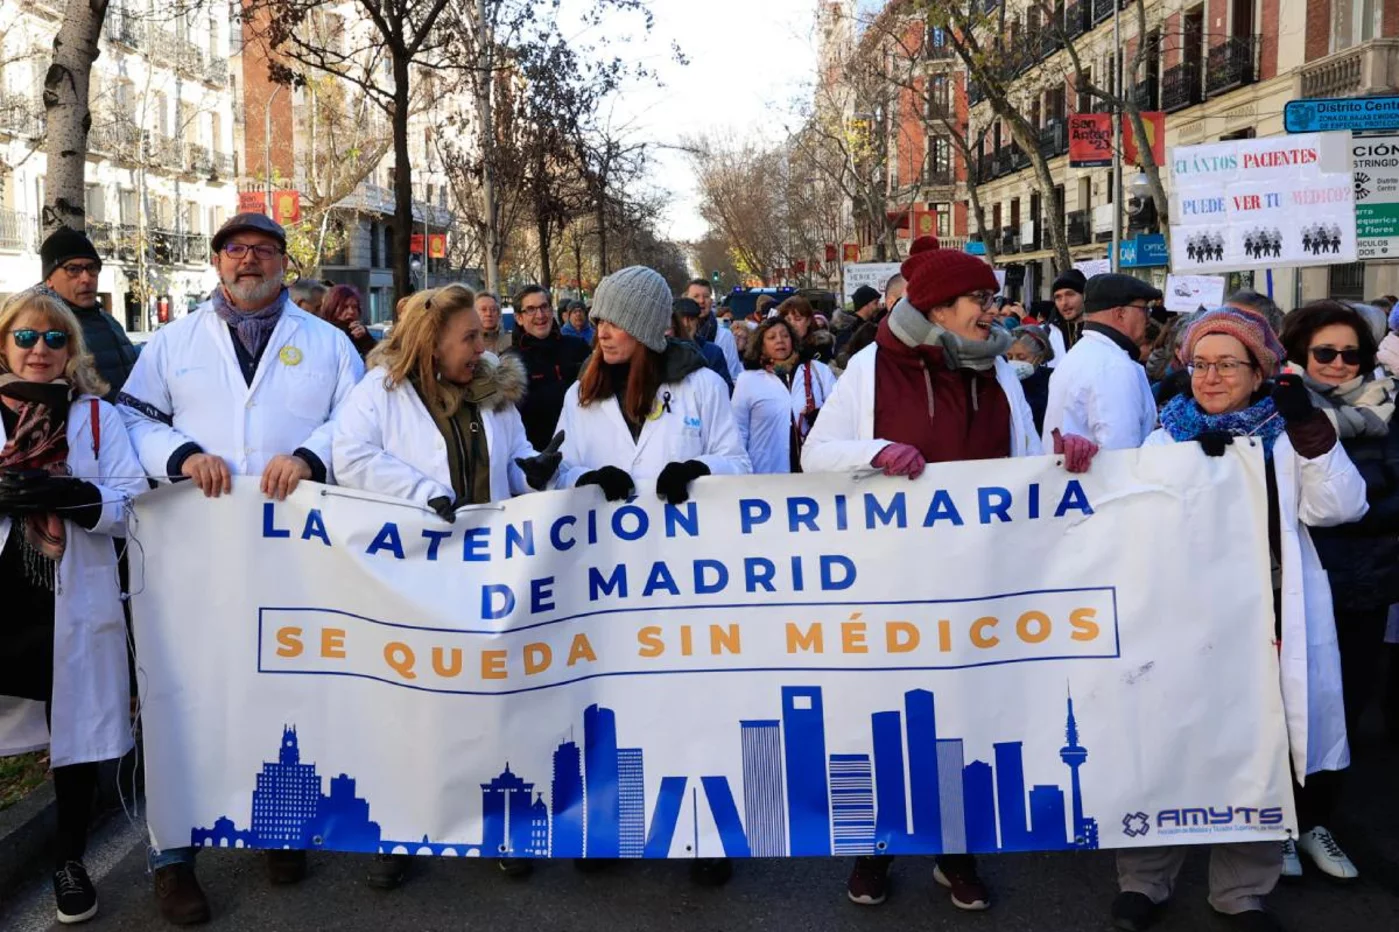  Manifestación de médicos de familia y pediatras llevada a cabo este miércoles ante la Consejería de Sanidad de Madrid, en defensa de una Atención Primaria de calidad. Foto: EFE/ ZIPI